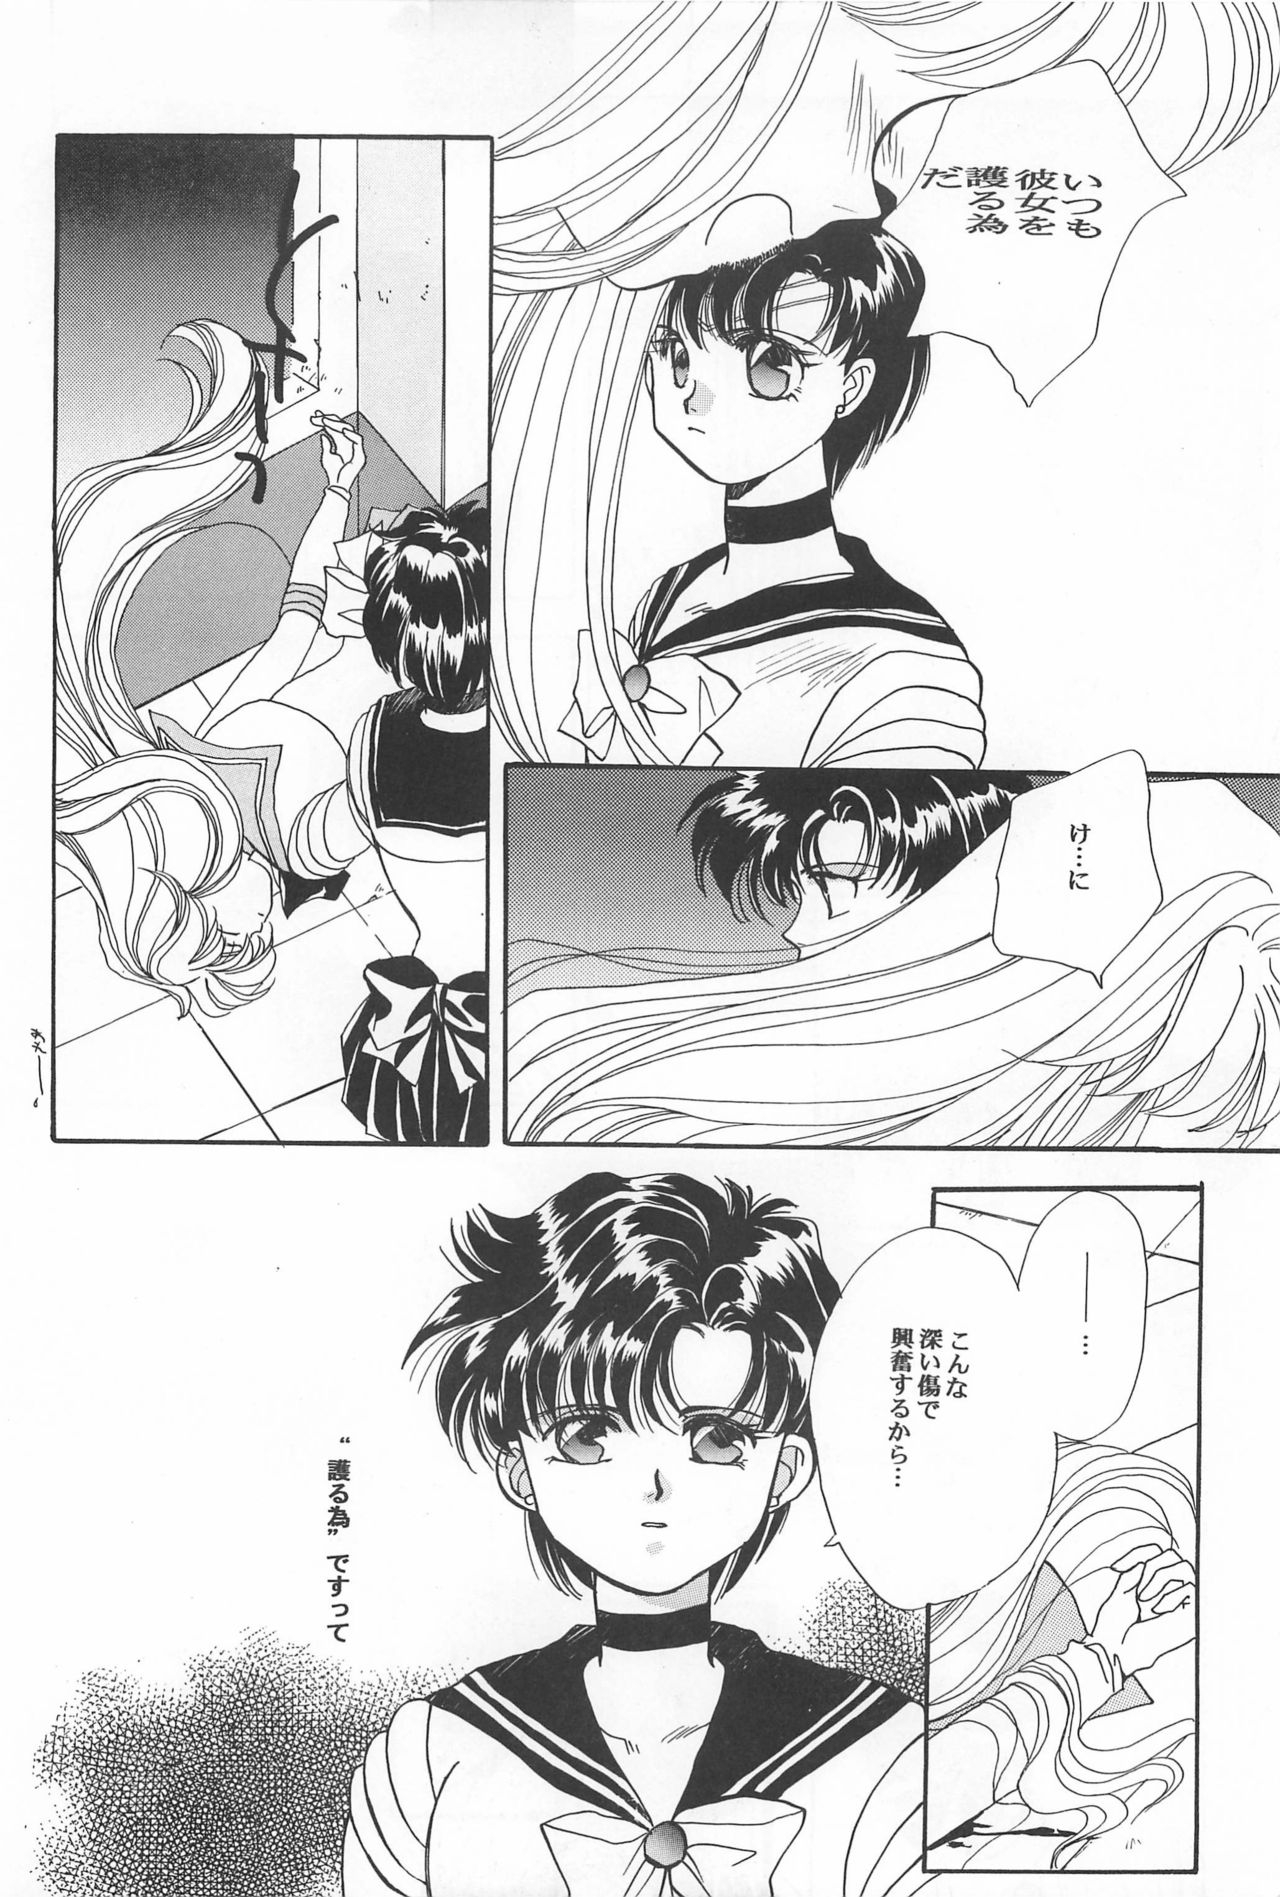 [Hello World (Muttri Moony)] Kaze no You ni Yume no You ni - Sailor Moon Collection (Sailor Moon) 143